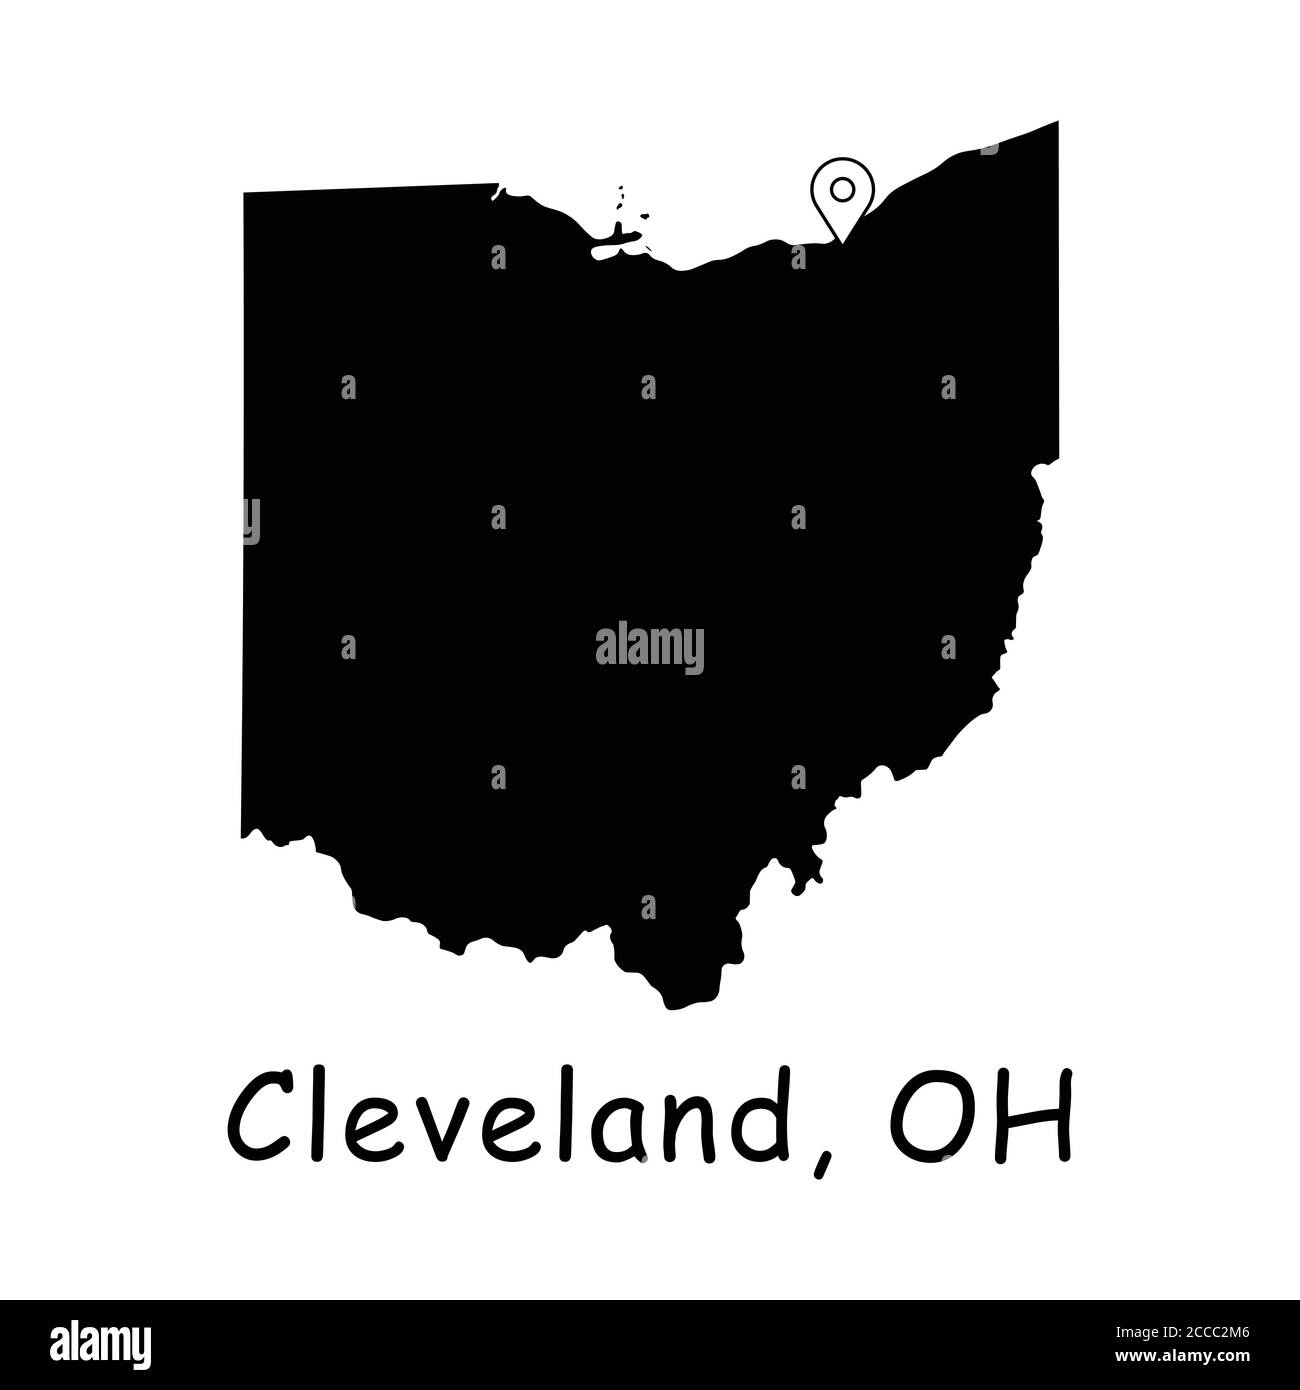 Cleveland sur la carte de l'État de l'Ohio. Carte détaillée de l'État de l'Ohio avec broche d'emplacement sur Cleveland City. Carte vectorielle de silhouette noire isolée sur fond blanc. Illustration de Vecteur